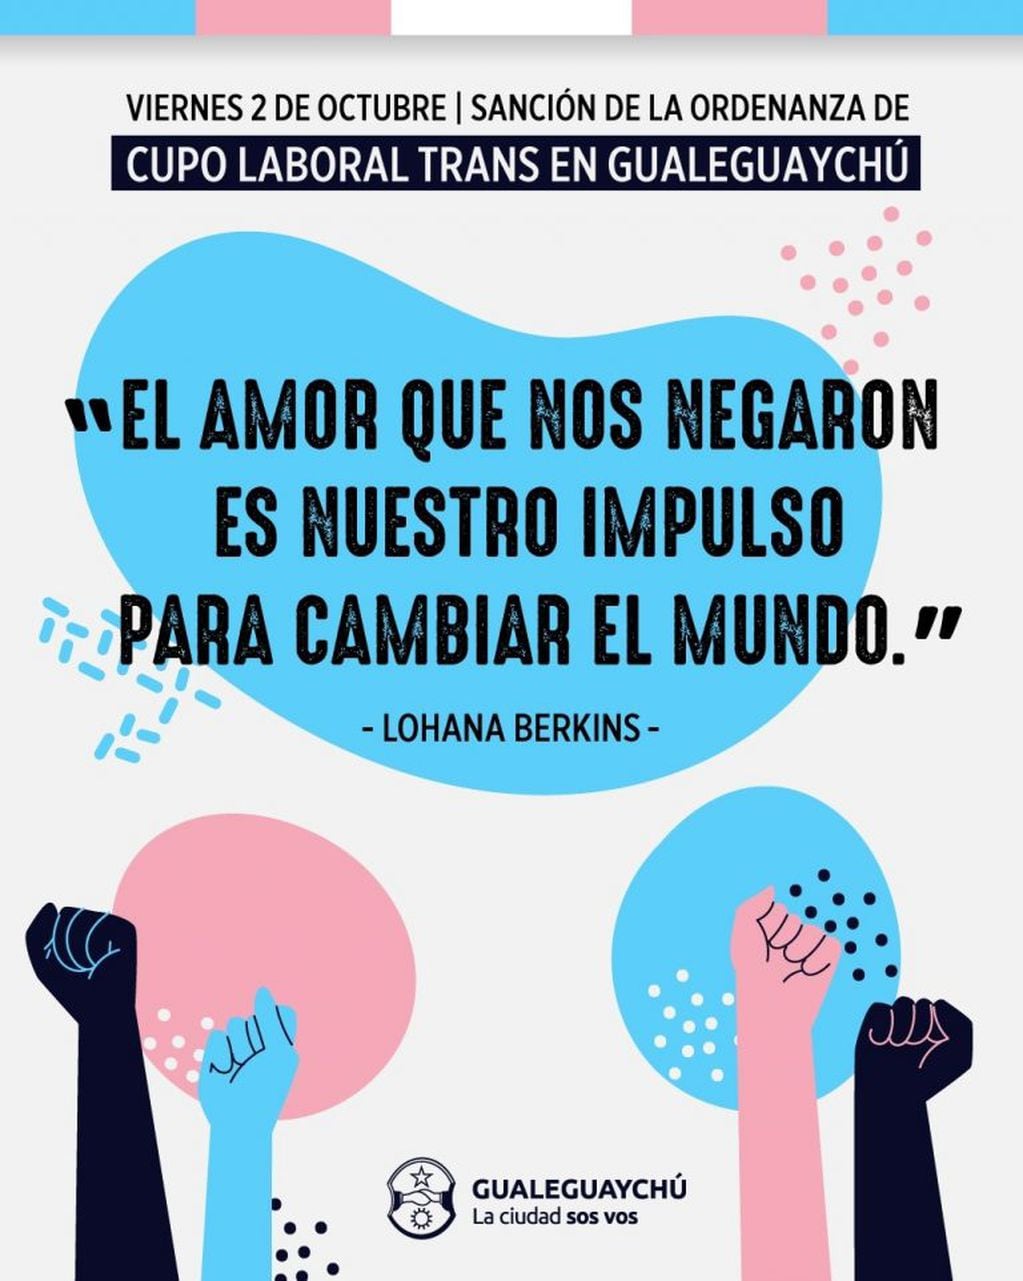 Gualeguaychú aprobó el cupo laboral trans.
Crédito: MDG